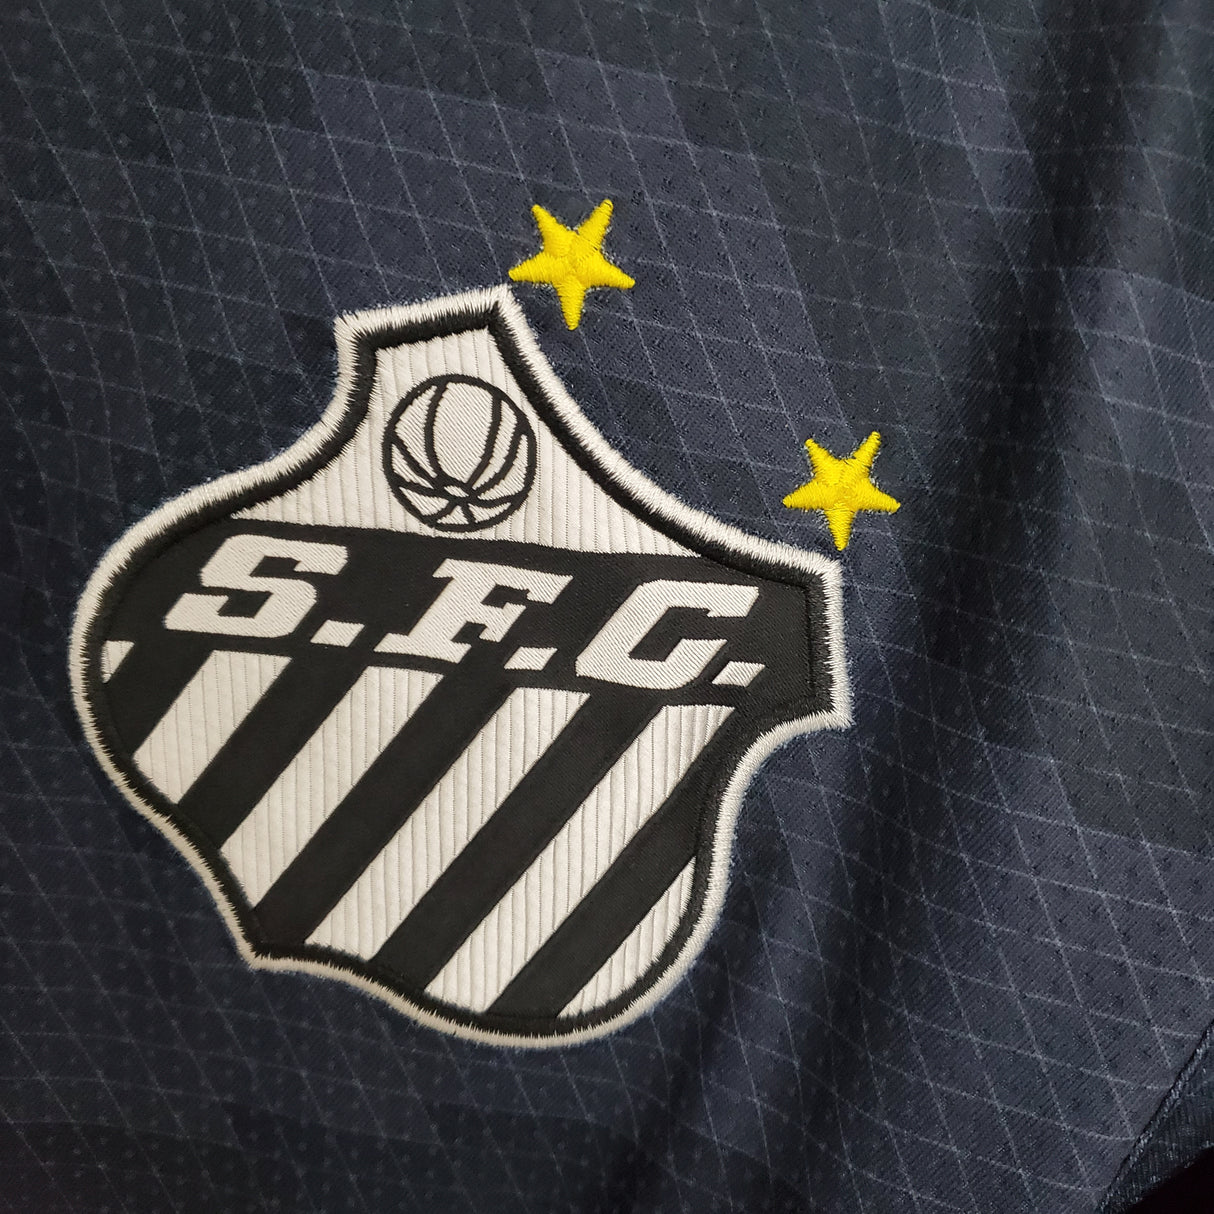 Santos 2021/22 Third Away